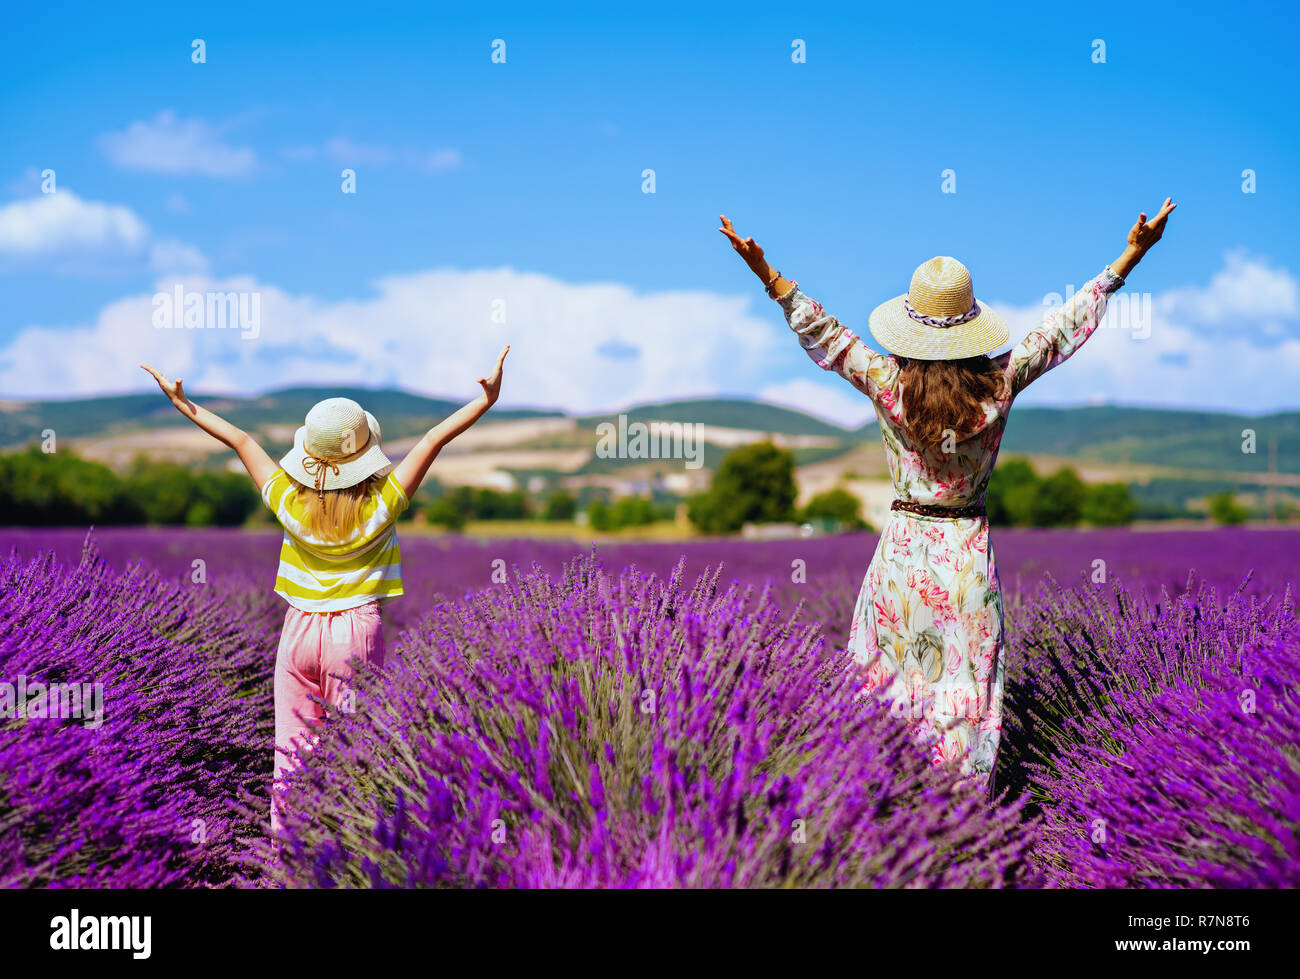 Von hinten trendy Mutter und Tochter im lavendelfeld in der Provence, Frankreich freuen. Mutter und Kind Reisende möchten Sie interessante Foto zu machen gesehen Stockfoto